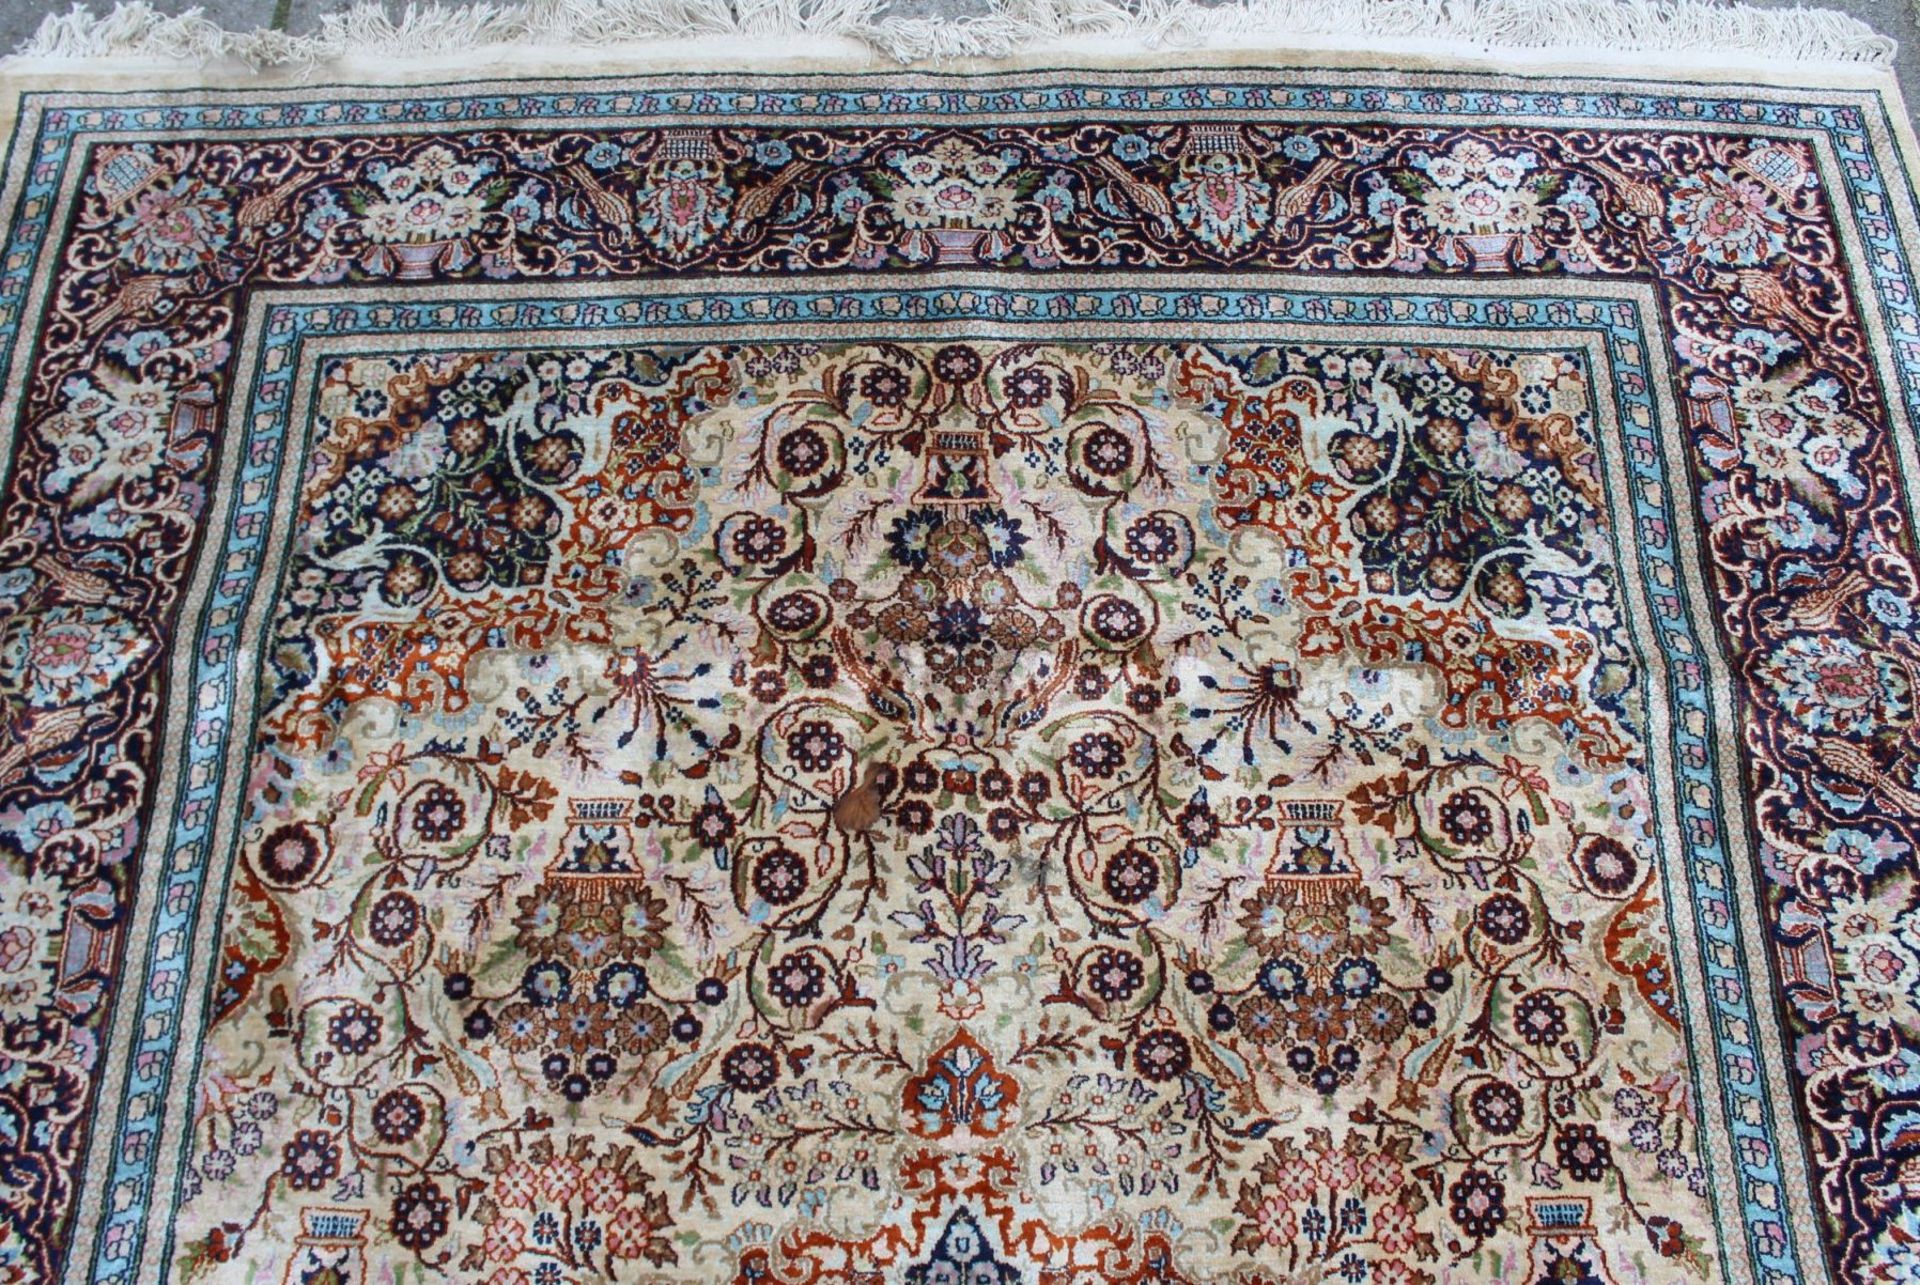 gr. Orientteppich, Seidenflor, schönes Muster, guter Zustand, 285 x 180cm. - Bild 4 aus 5